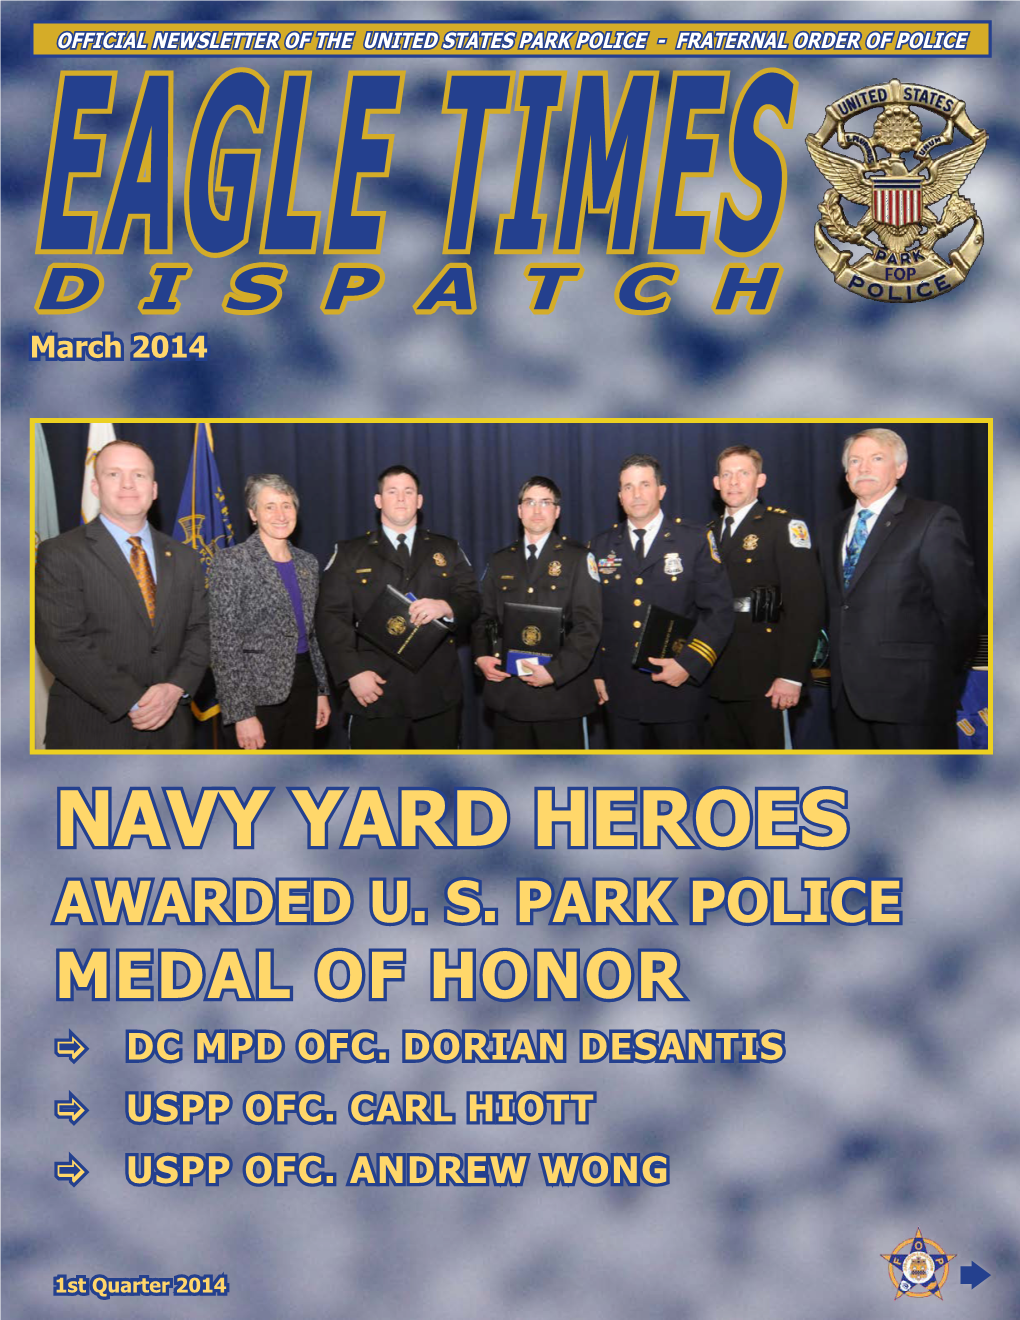 Navy Yard Heroes Awarded U